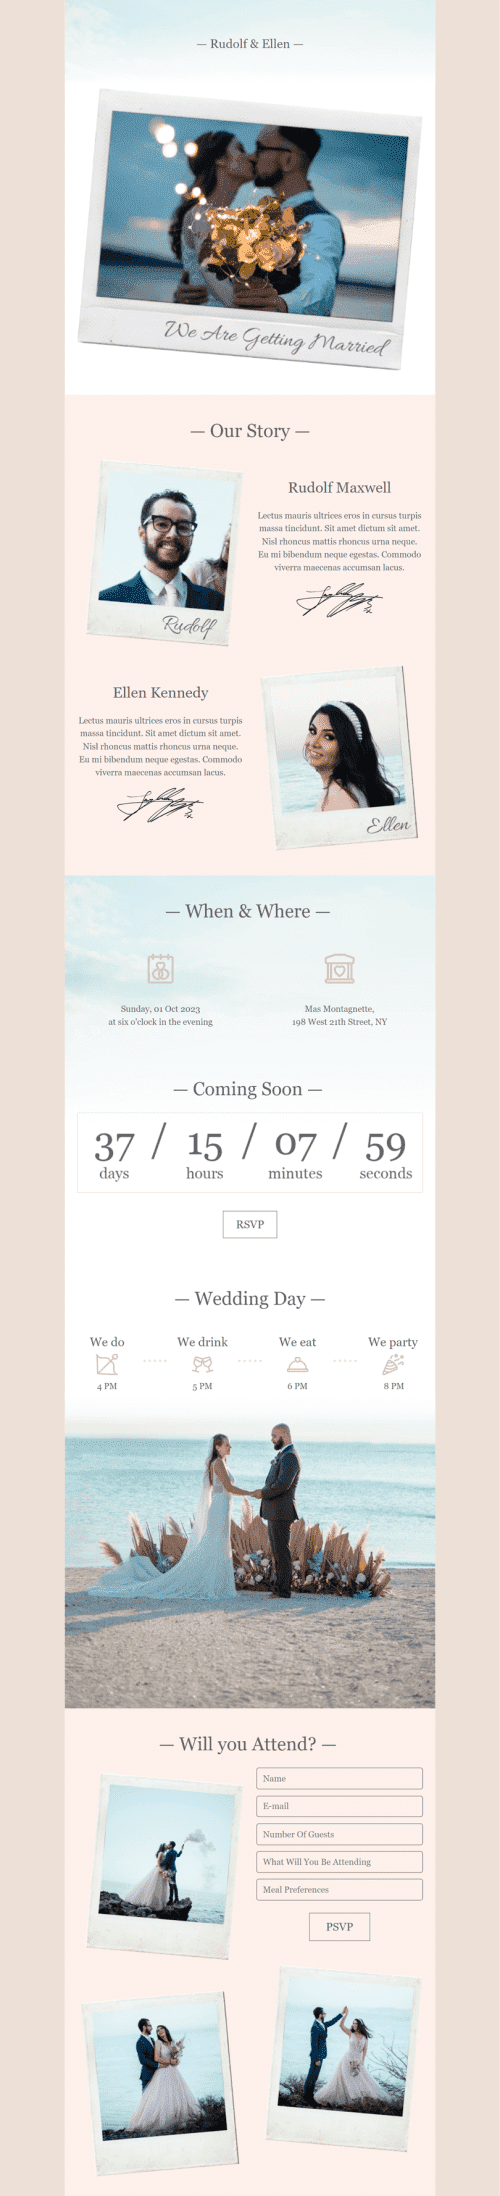 Modelo de E-mail de «Estamos nos casando» de Casamento para a indústria de Fotografia Visualização de dispositivo móvel